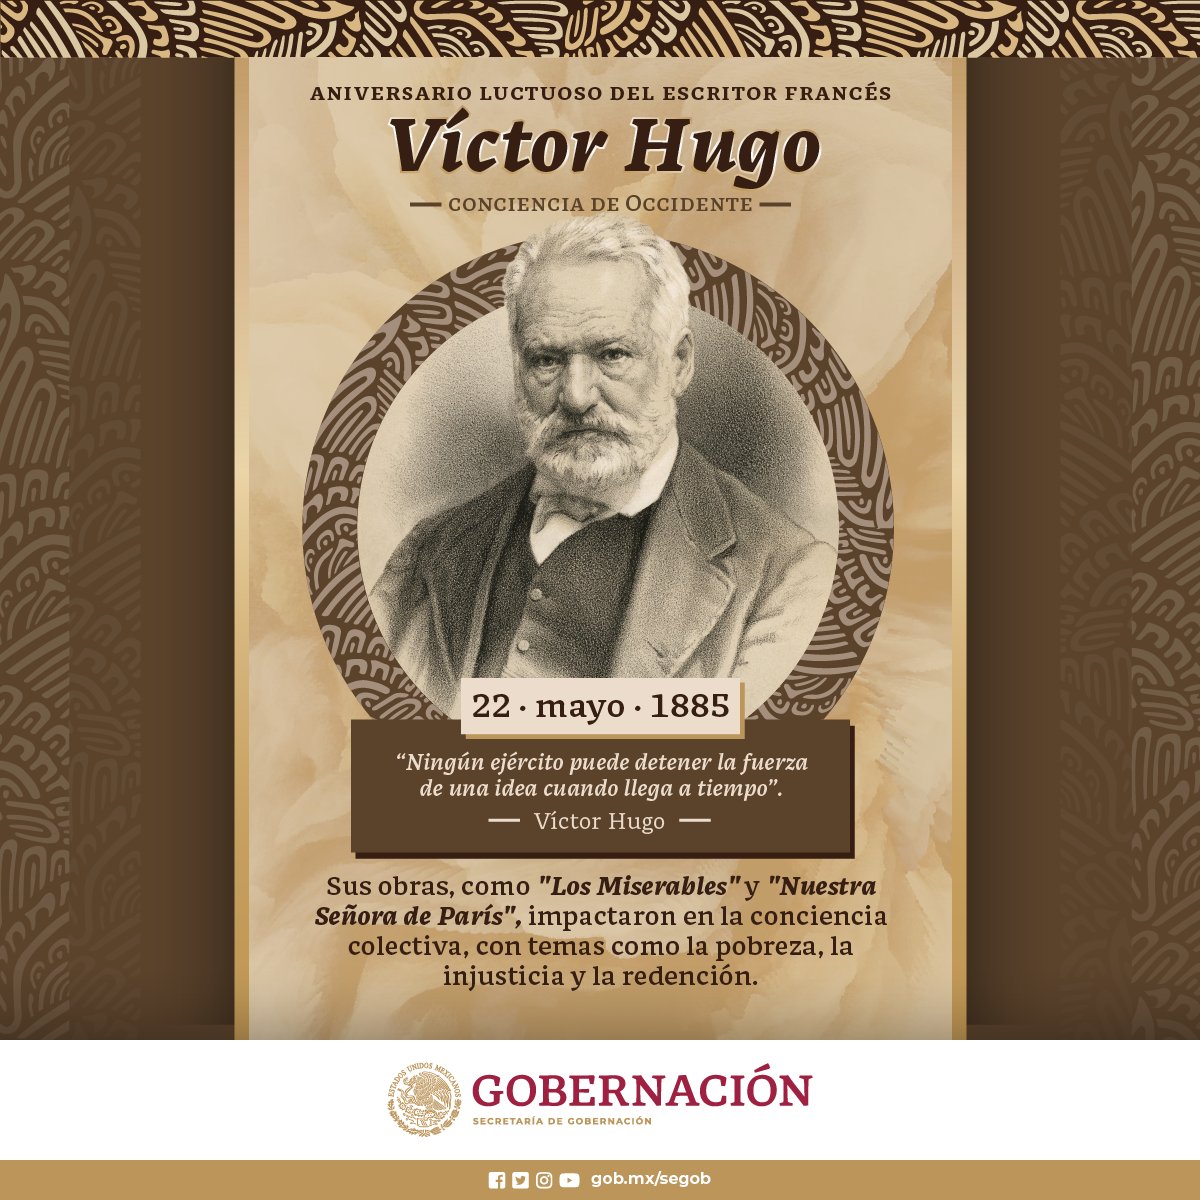 La obra del escritor Víctor Hugo, ha inspirado movimientos por la #igualdad y la #justicia en todo el mundo.